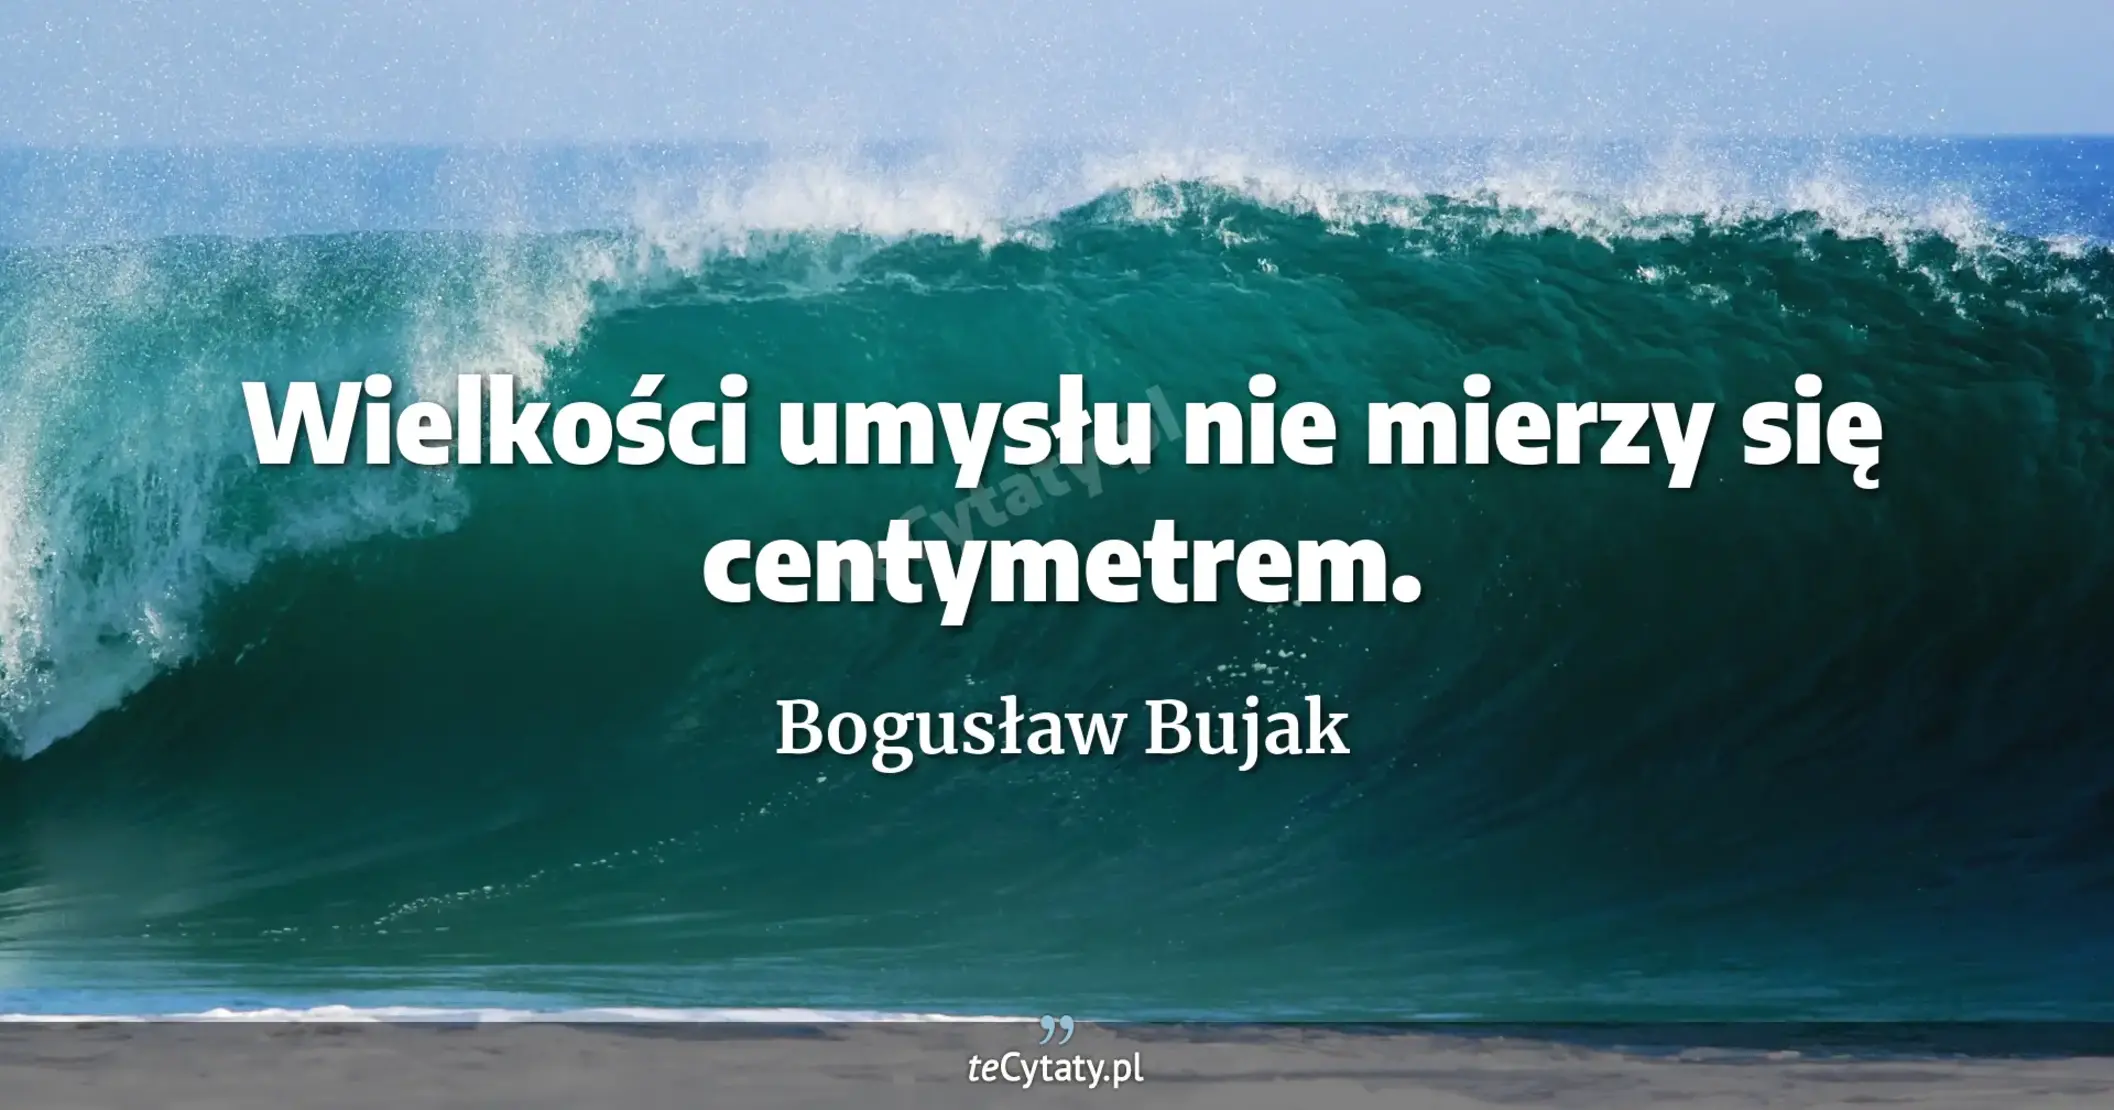 Wielkości umysłu nie mierzy się centymetrem. - Bogusław Bujak